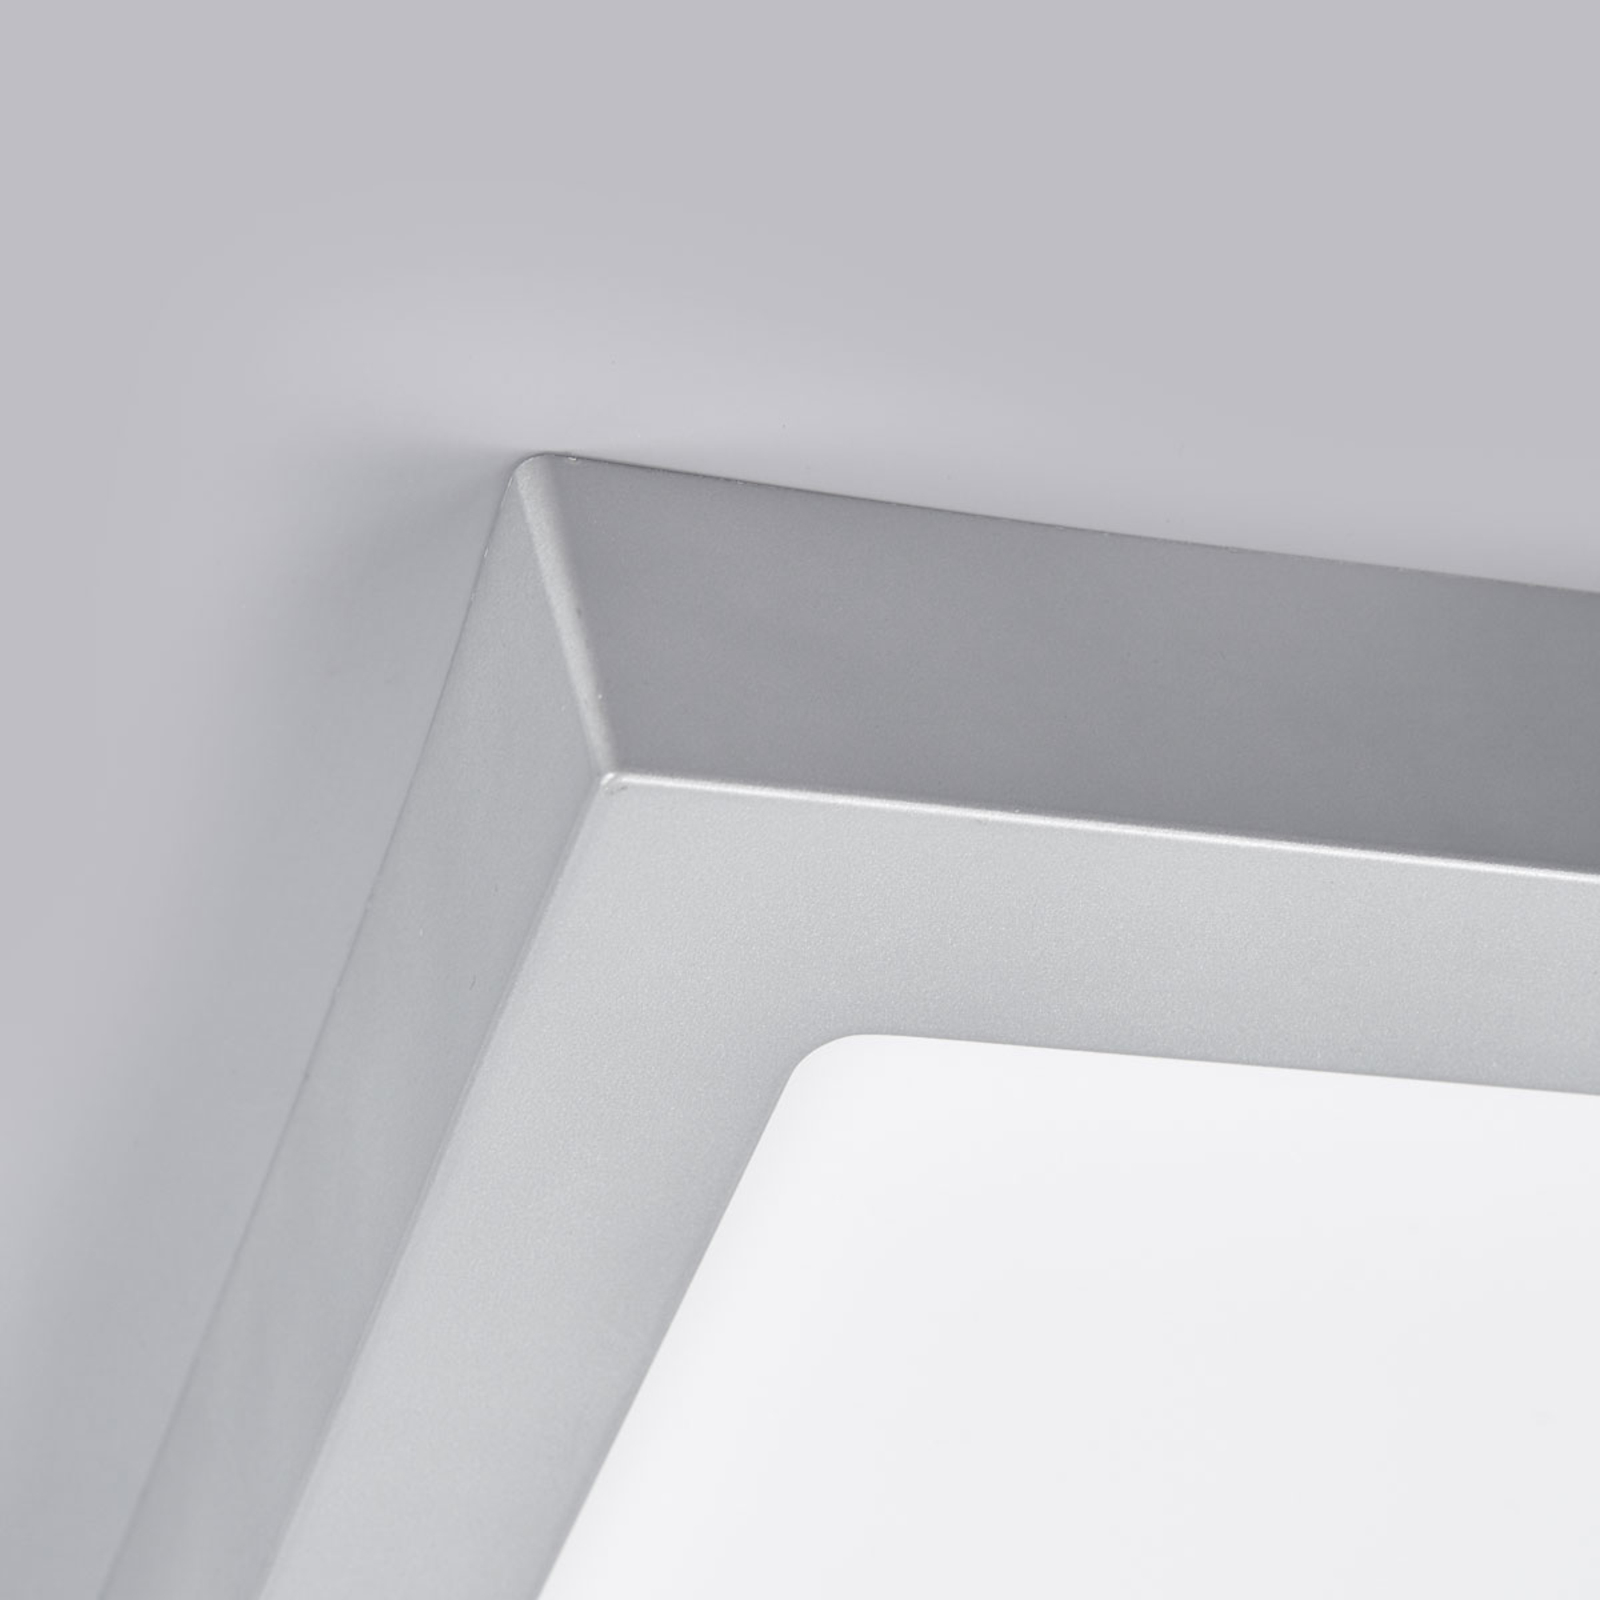 Marlo plafonieră LED argintiu unghiulară 23,1cm